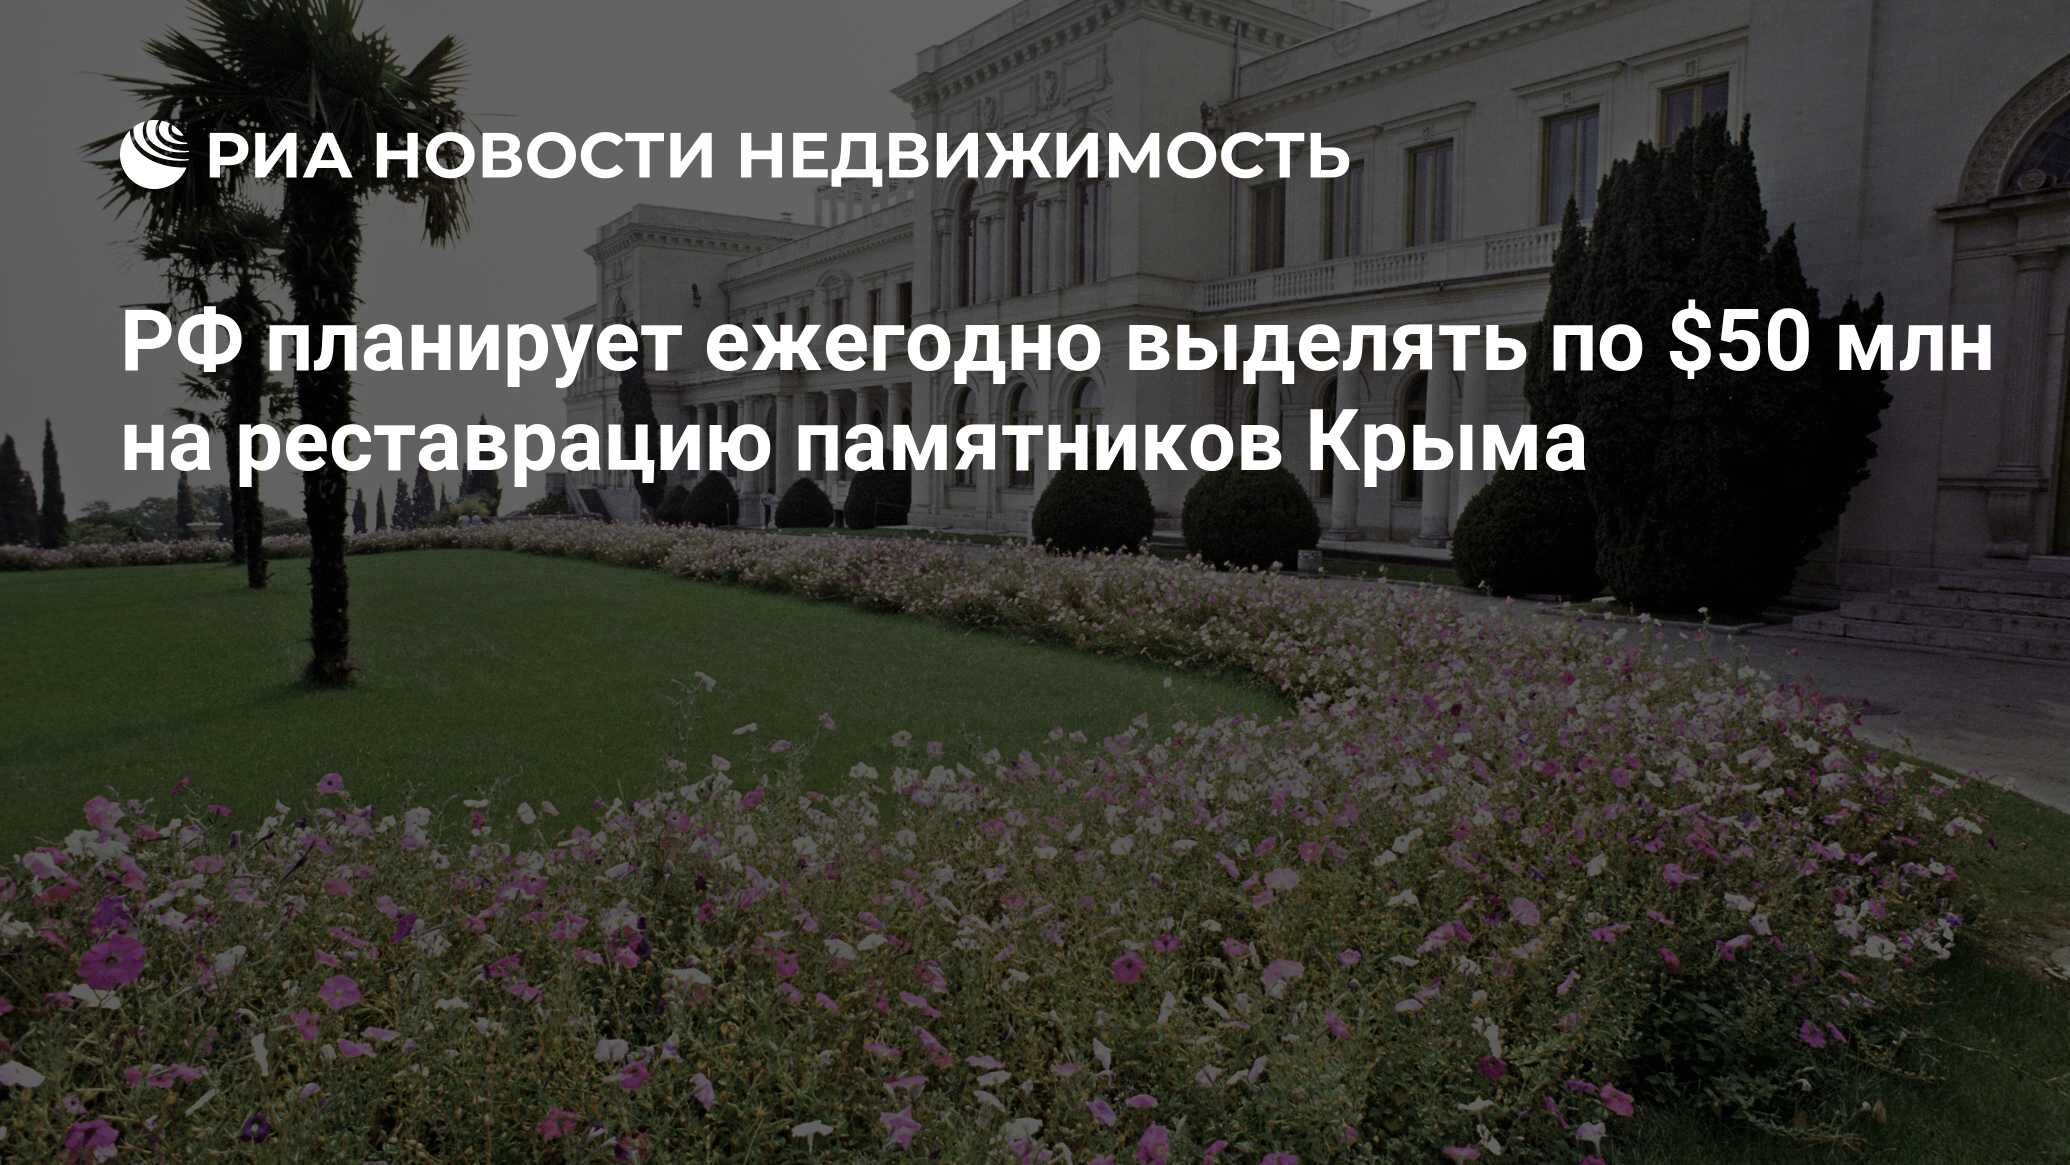 Ежегодно выделяют. Реставрация памятников культуры в Крыму.